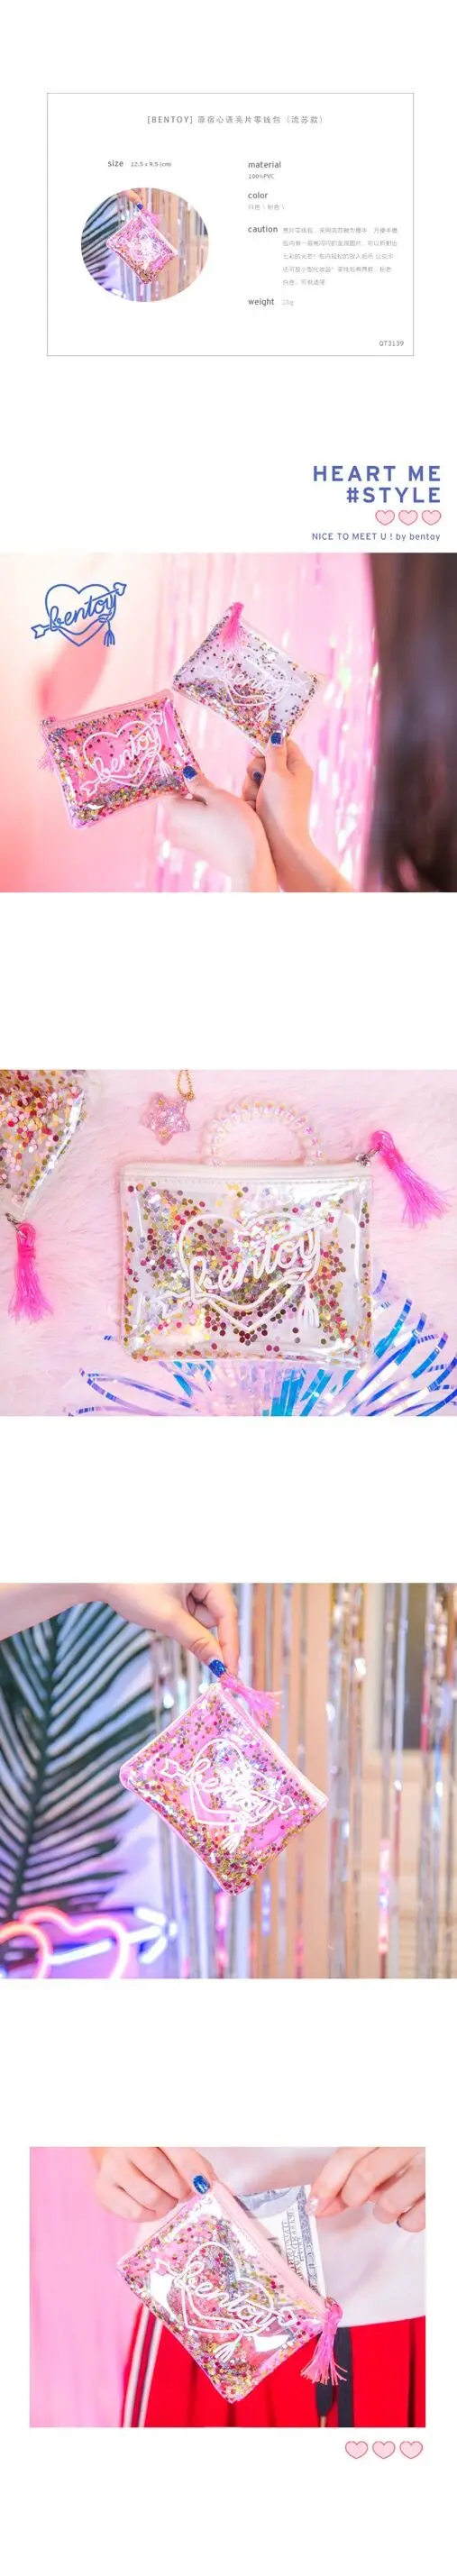 Bentoy Желейная Сумка розовая Милая кисточка блестка женский клатч блестки портмоне ПВХ прозрачный пакет сумка для девочек маленький кошелек